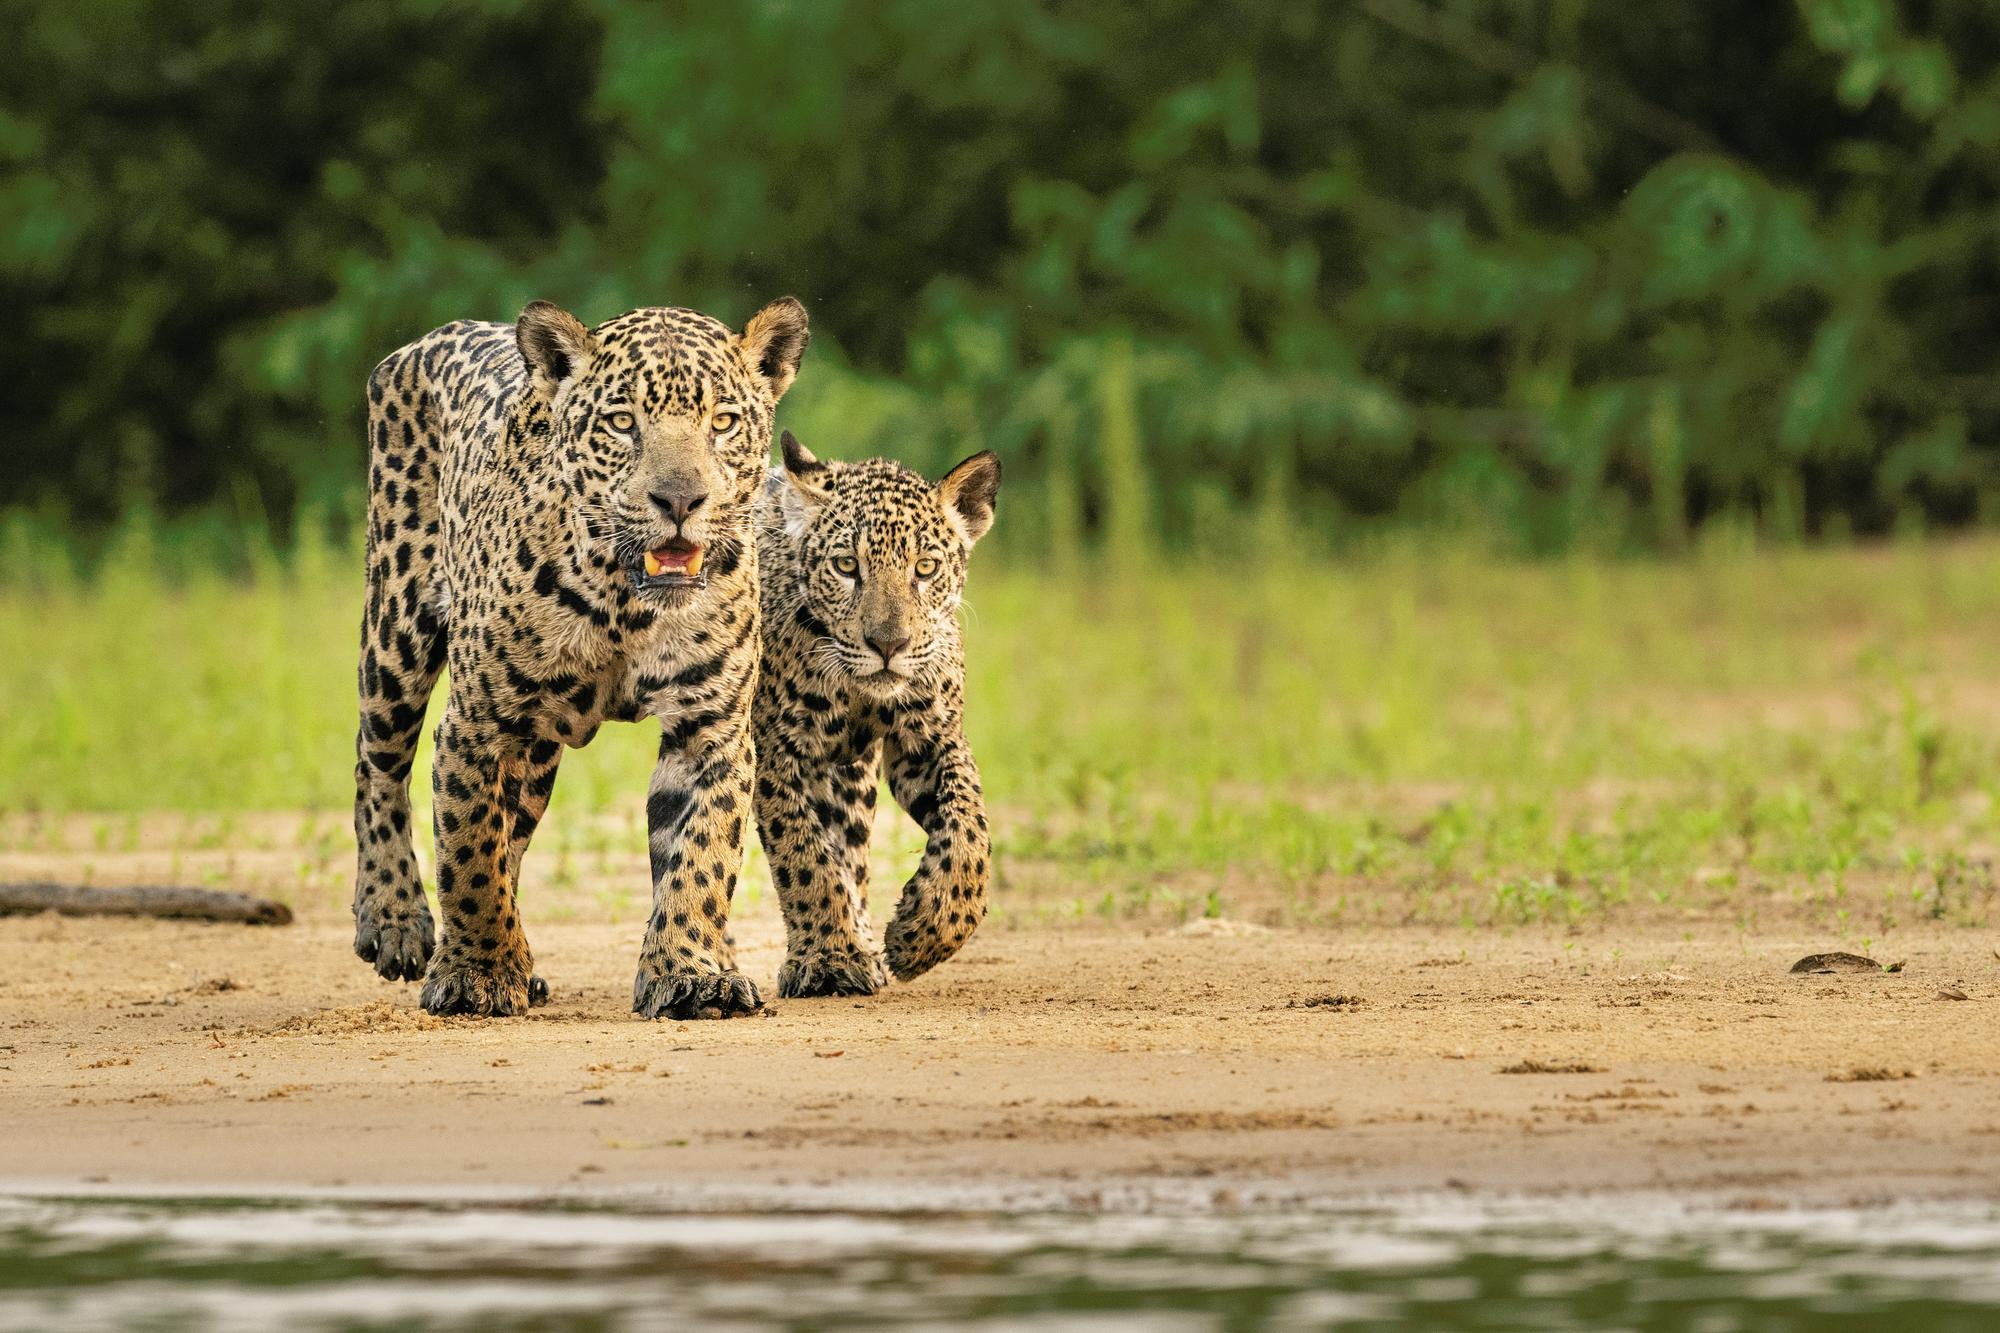 Two jaguars in Brazil